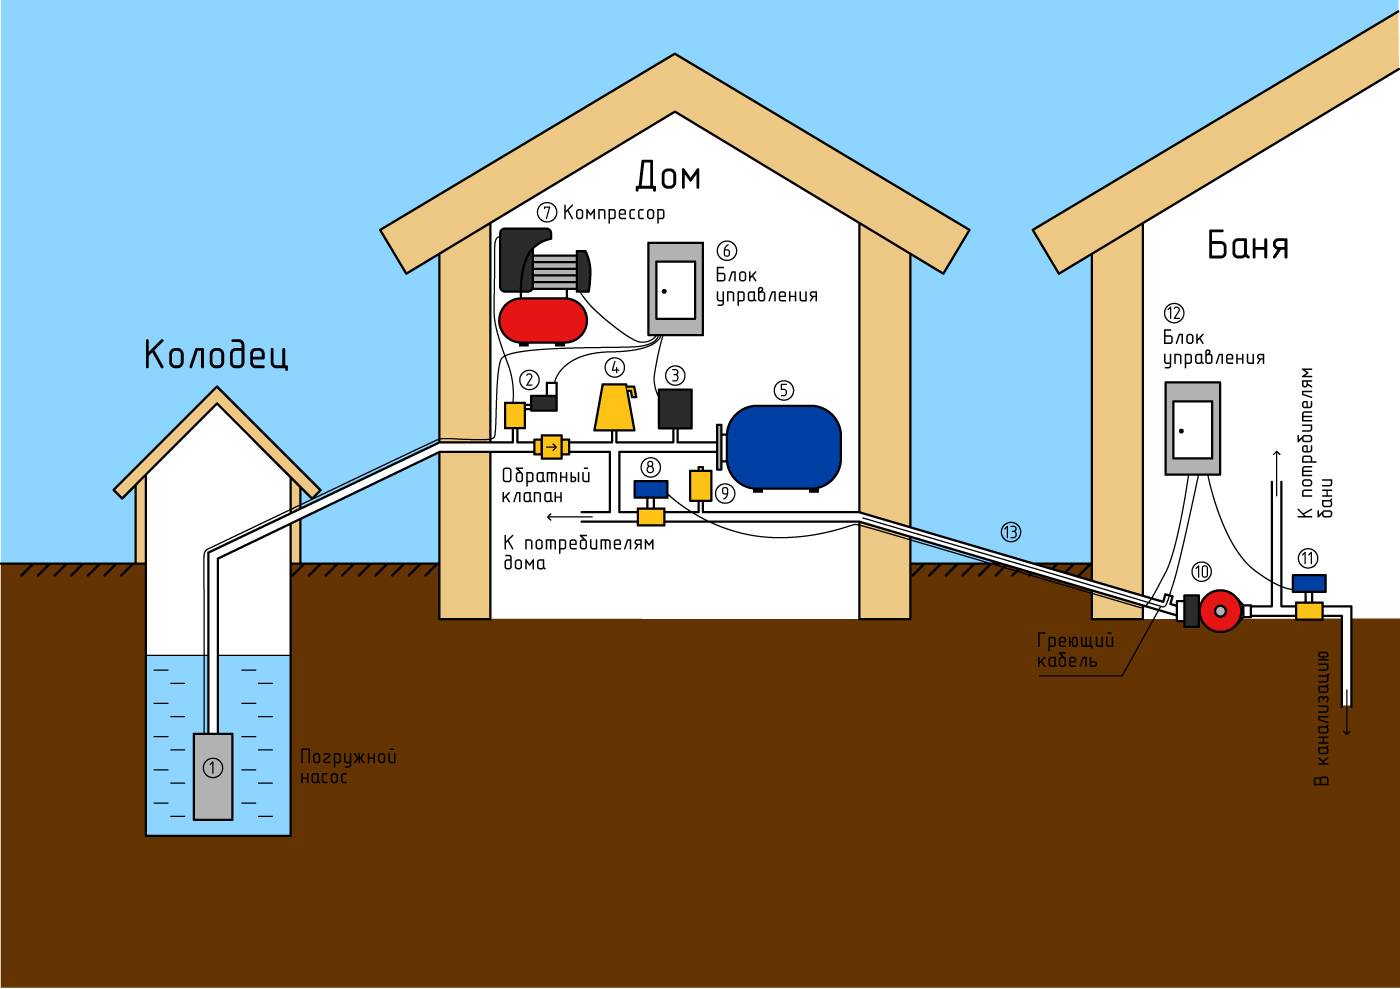 Вода в дом из колодца — делаем своими руками - строительство и ремонт